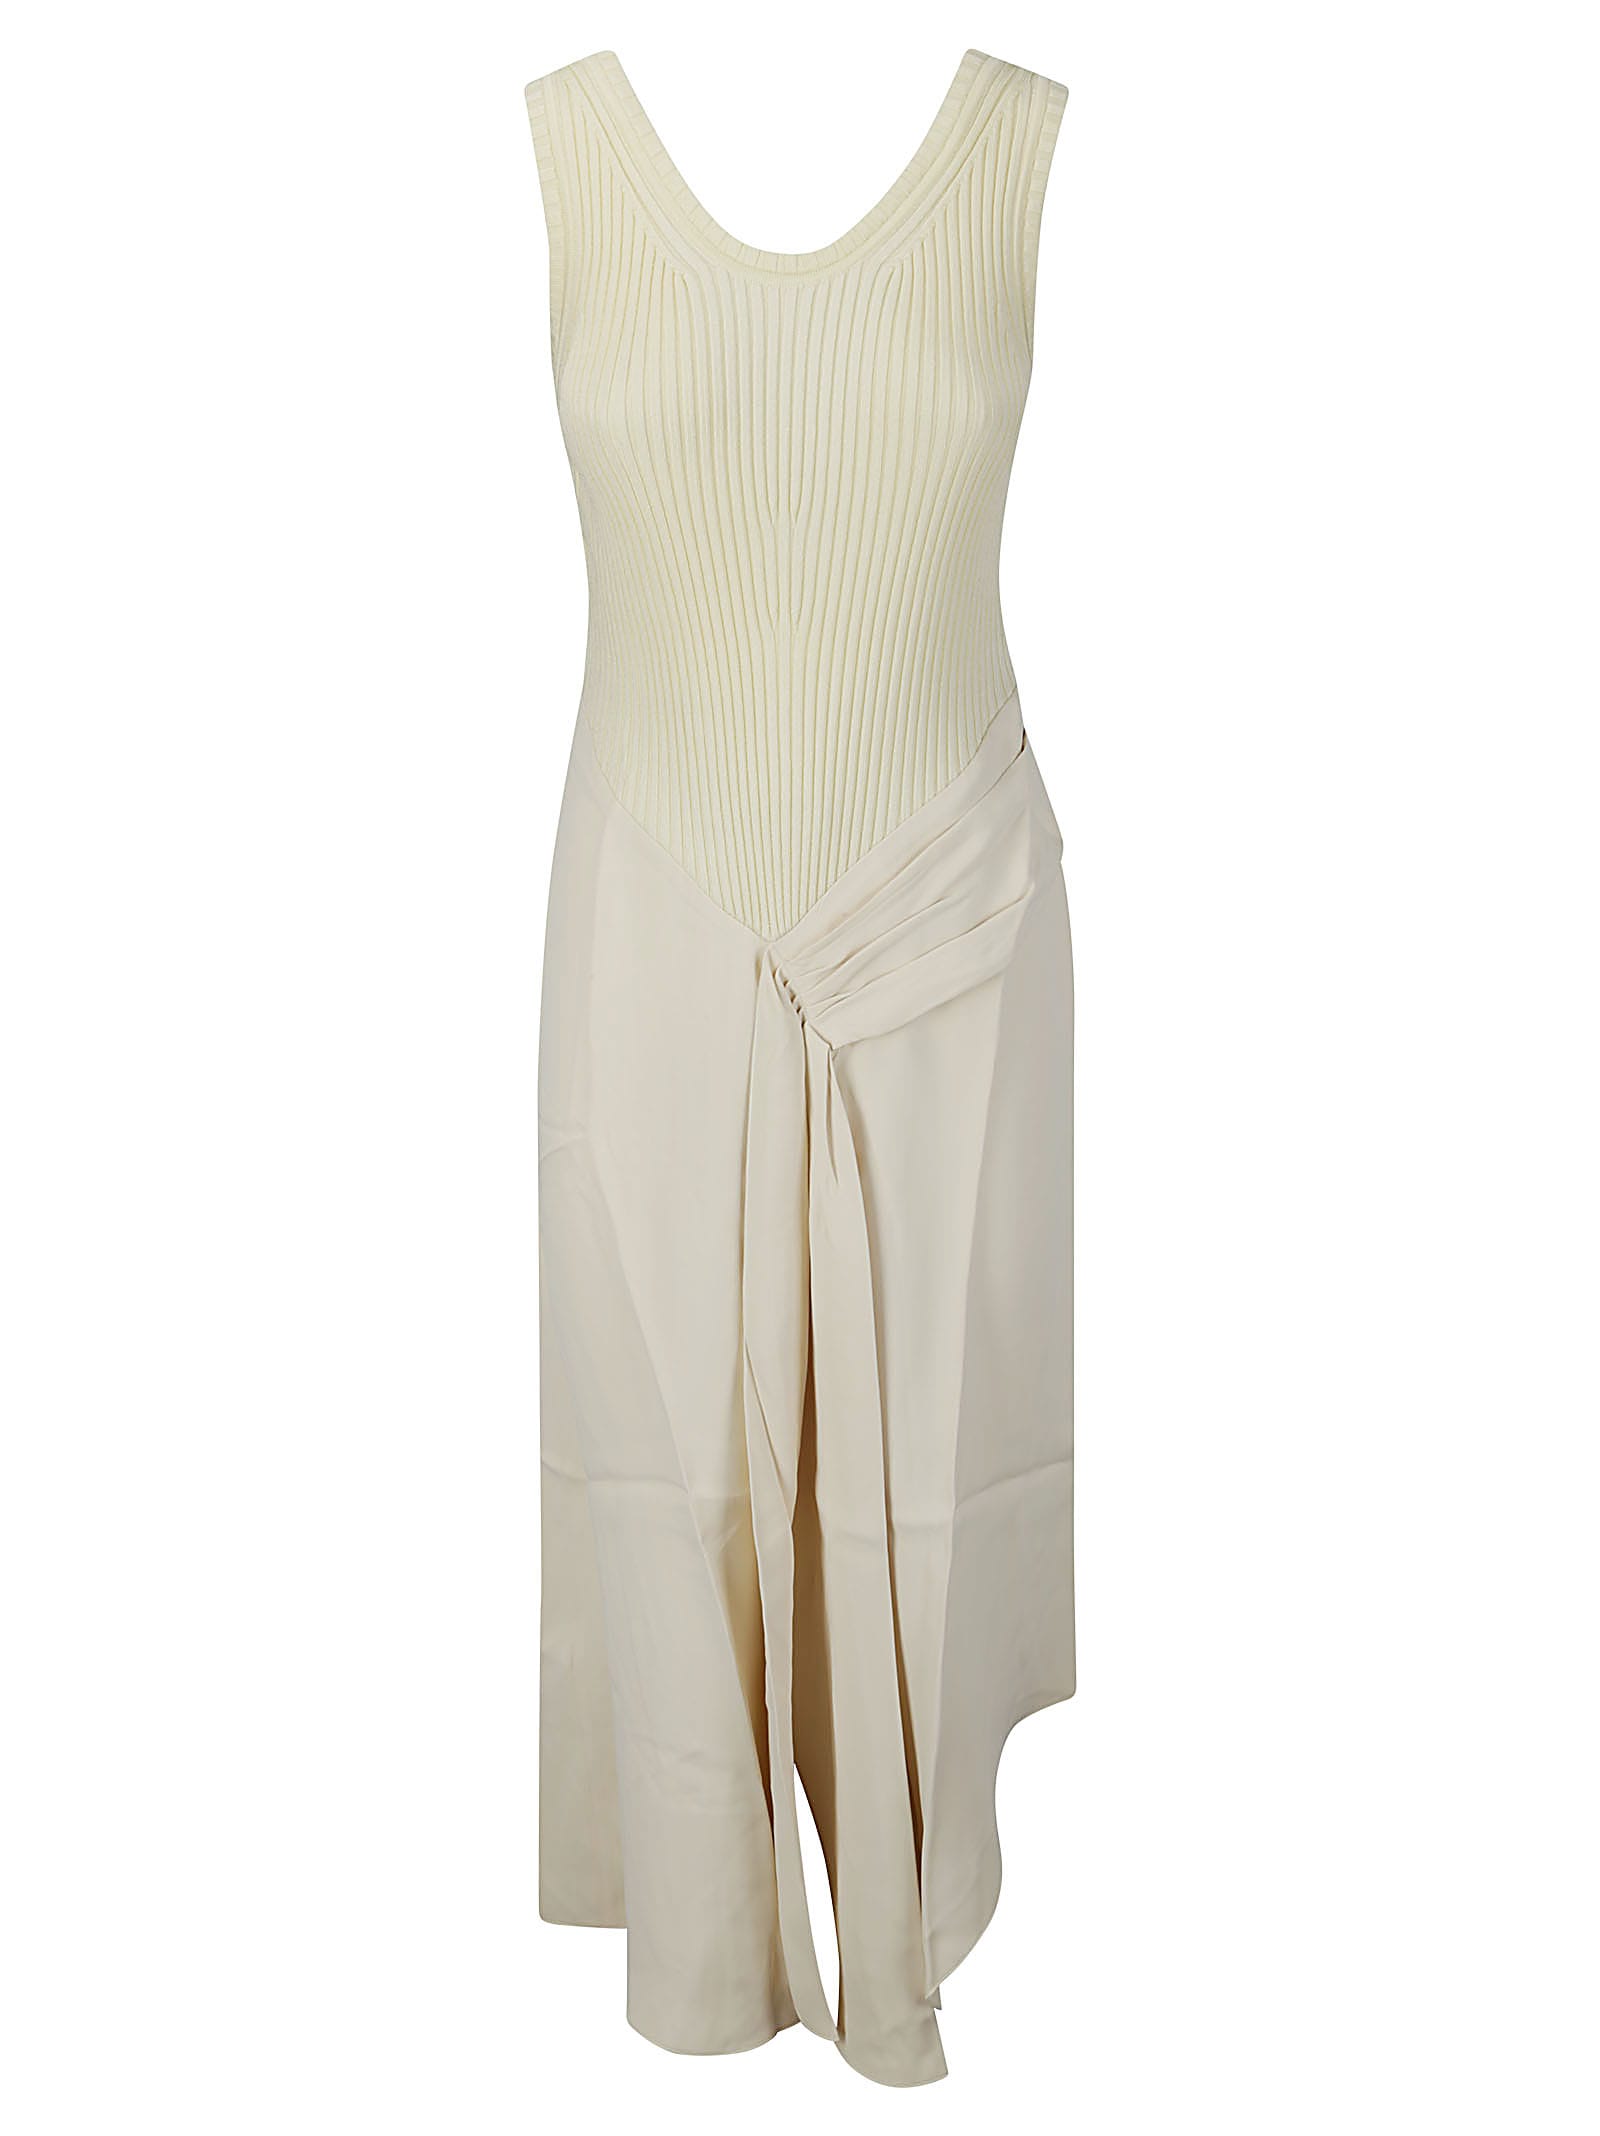 Victoria Beckham Sleeveless Tie Detail Dress In Cream